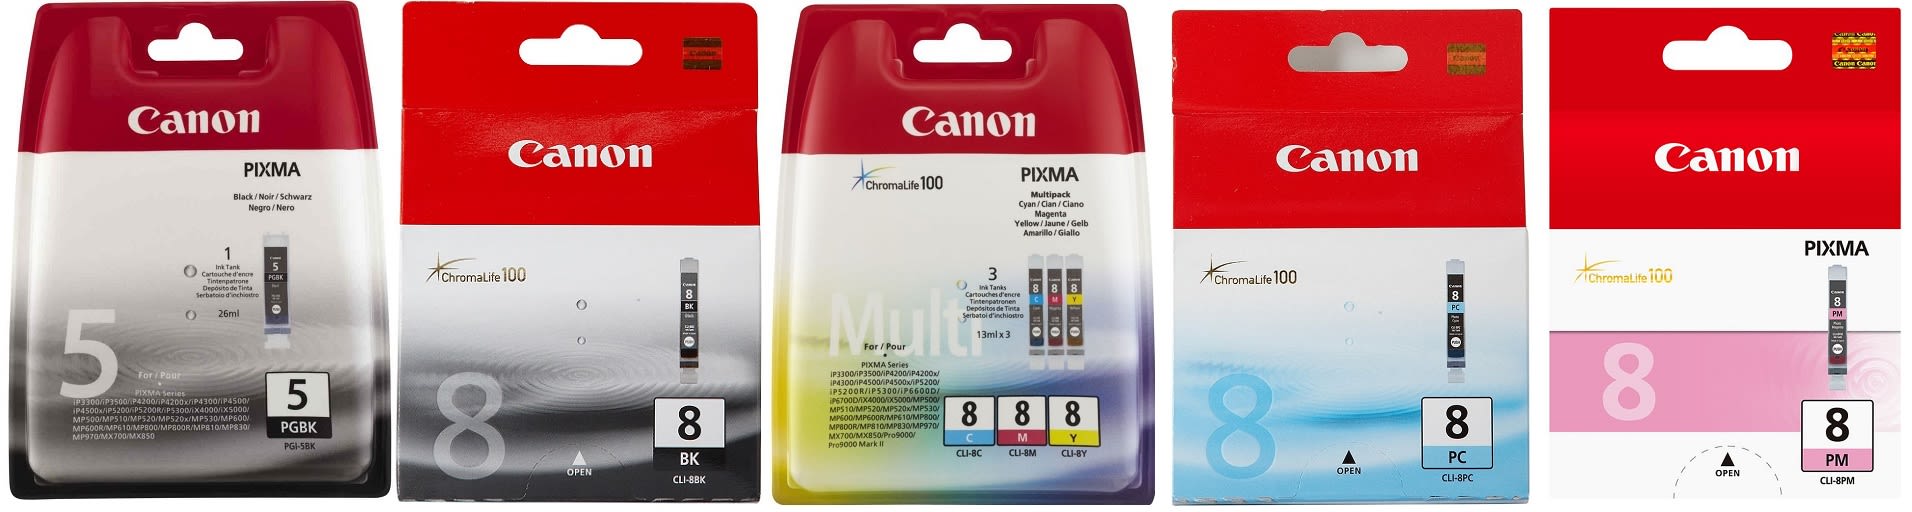 Картридж для Canon Pixma MP970 Купить комплект оригинальных чернил.